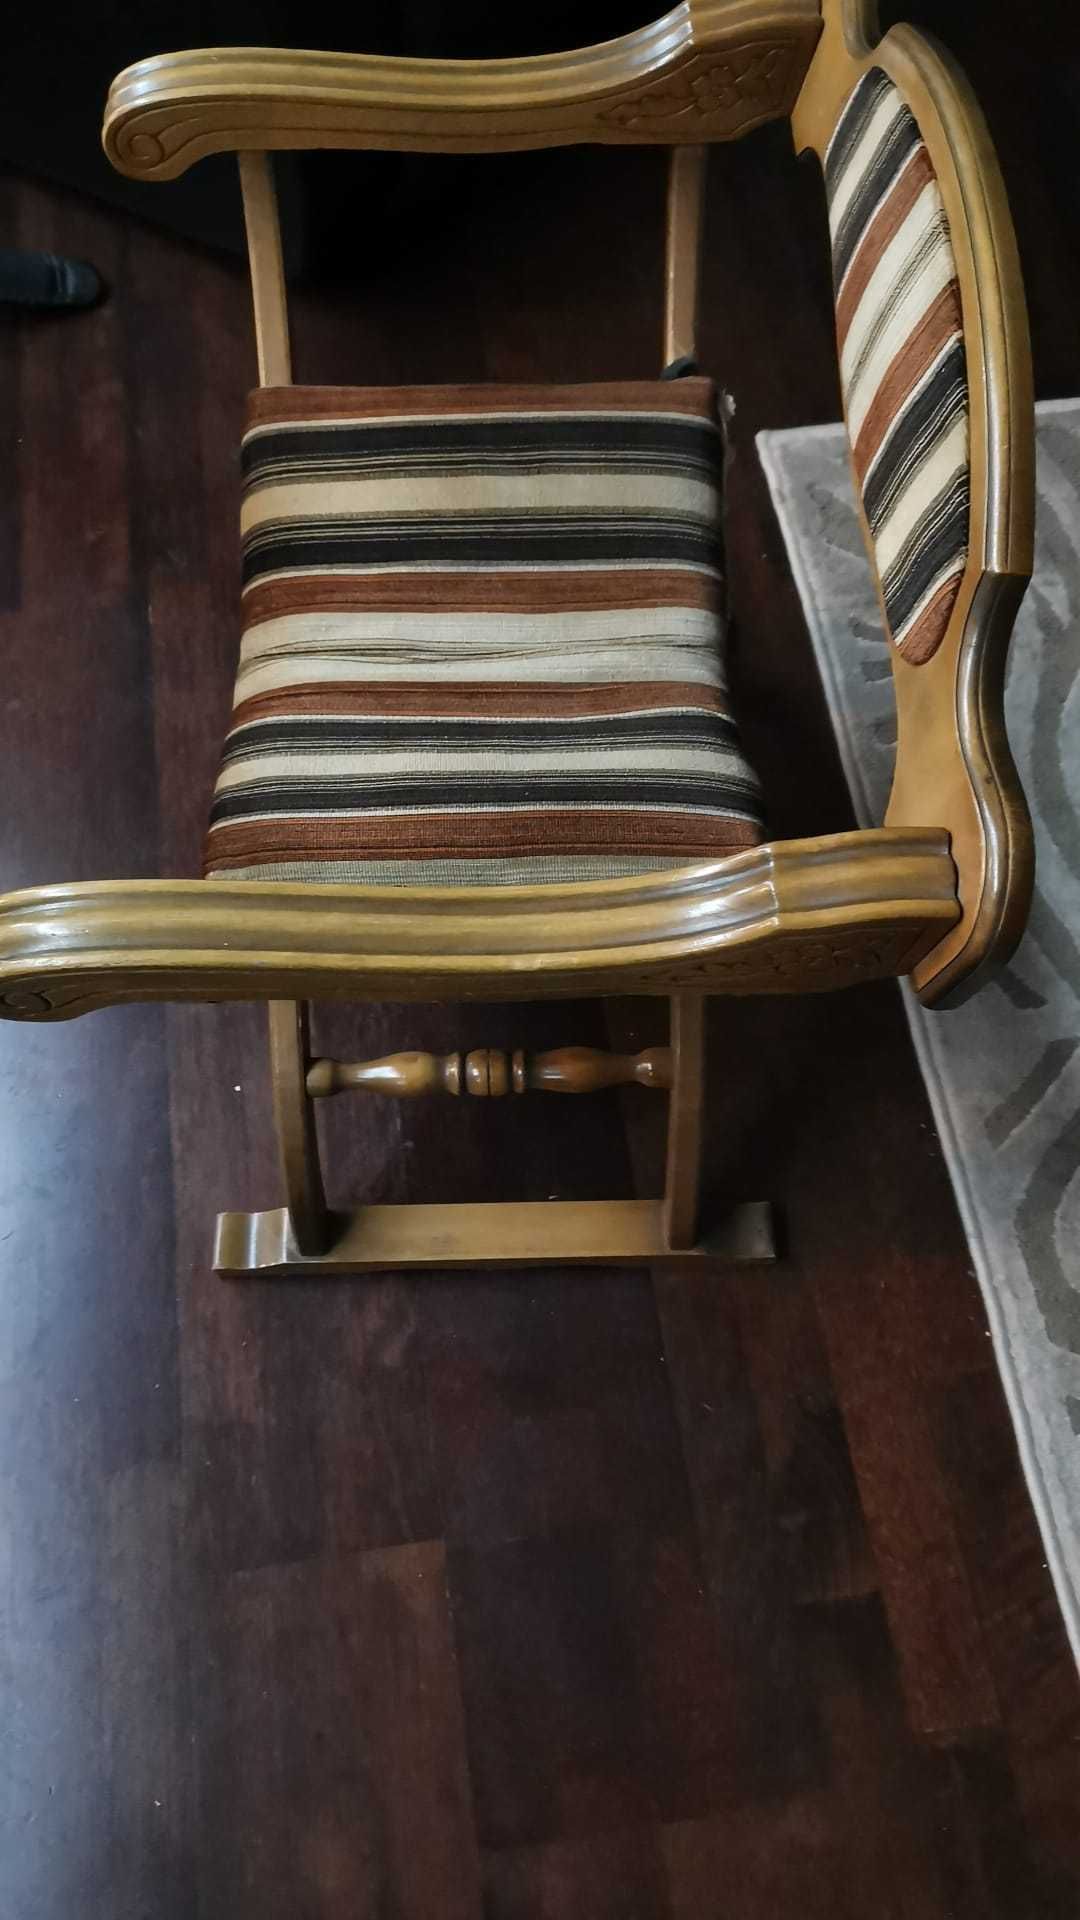 scaun jilt vintage lemn curbat